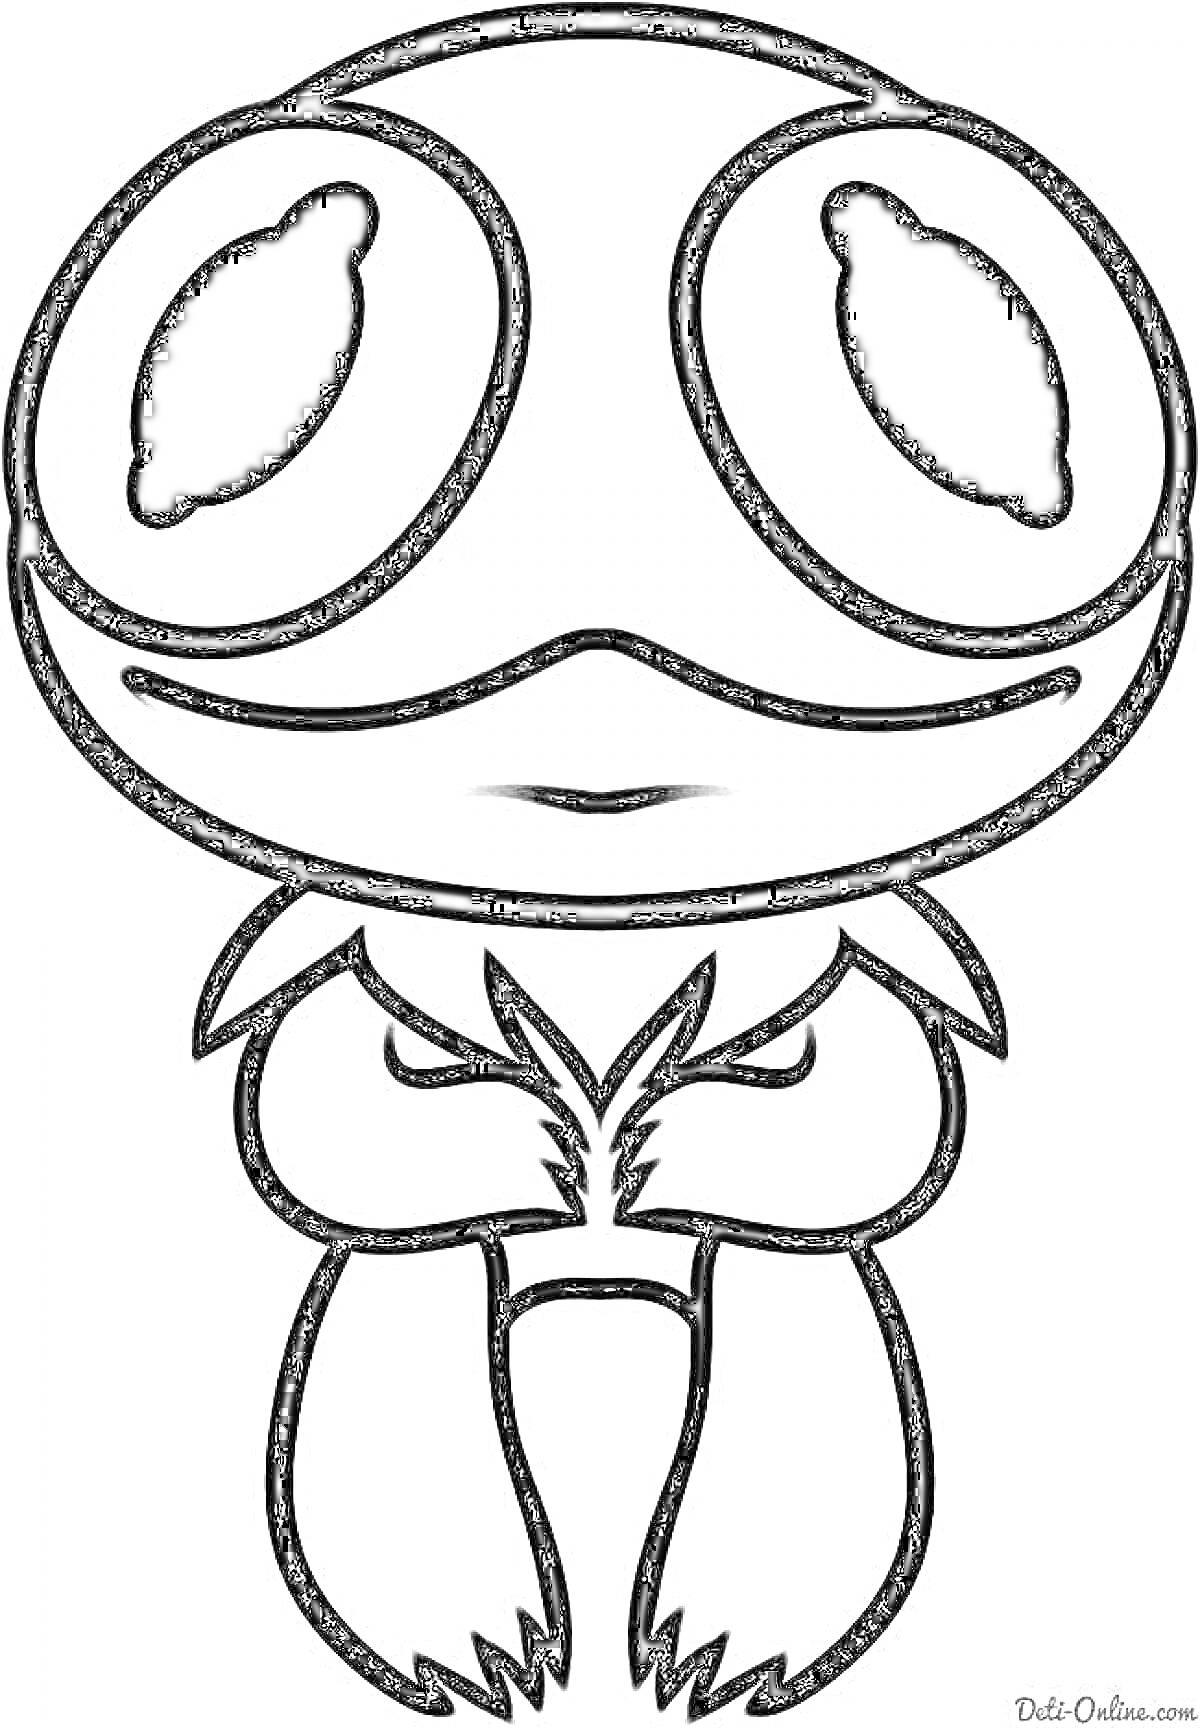 Раскраска Лягушка с большими глазами из Tik Tok с заостренными лапками и крупной головой